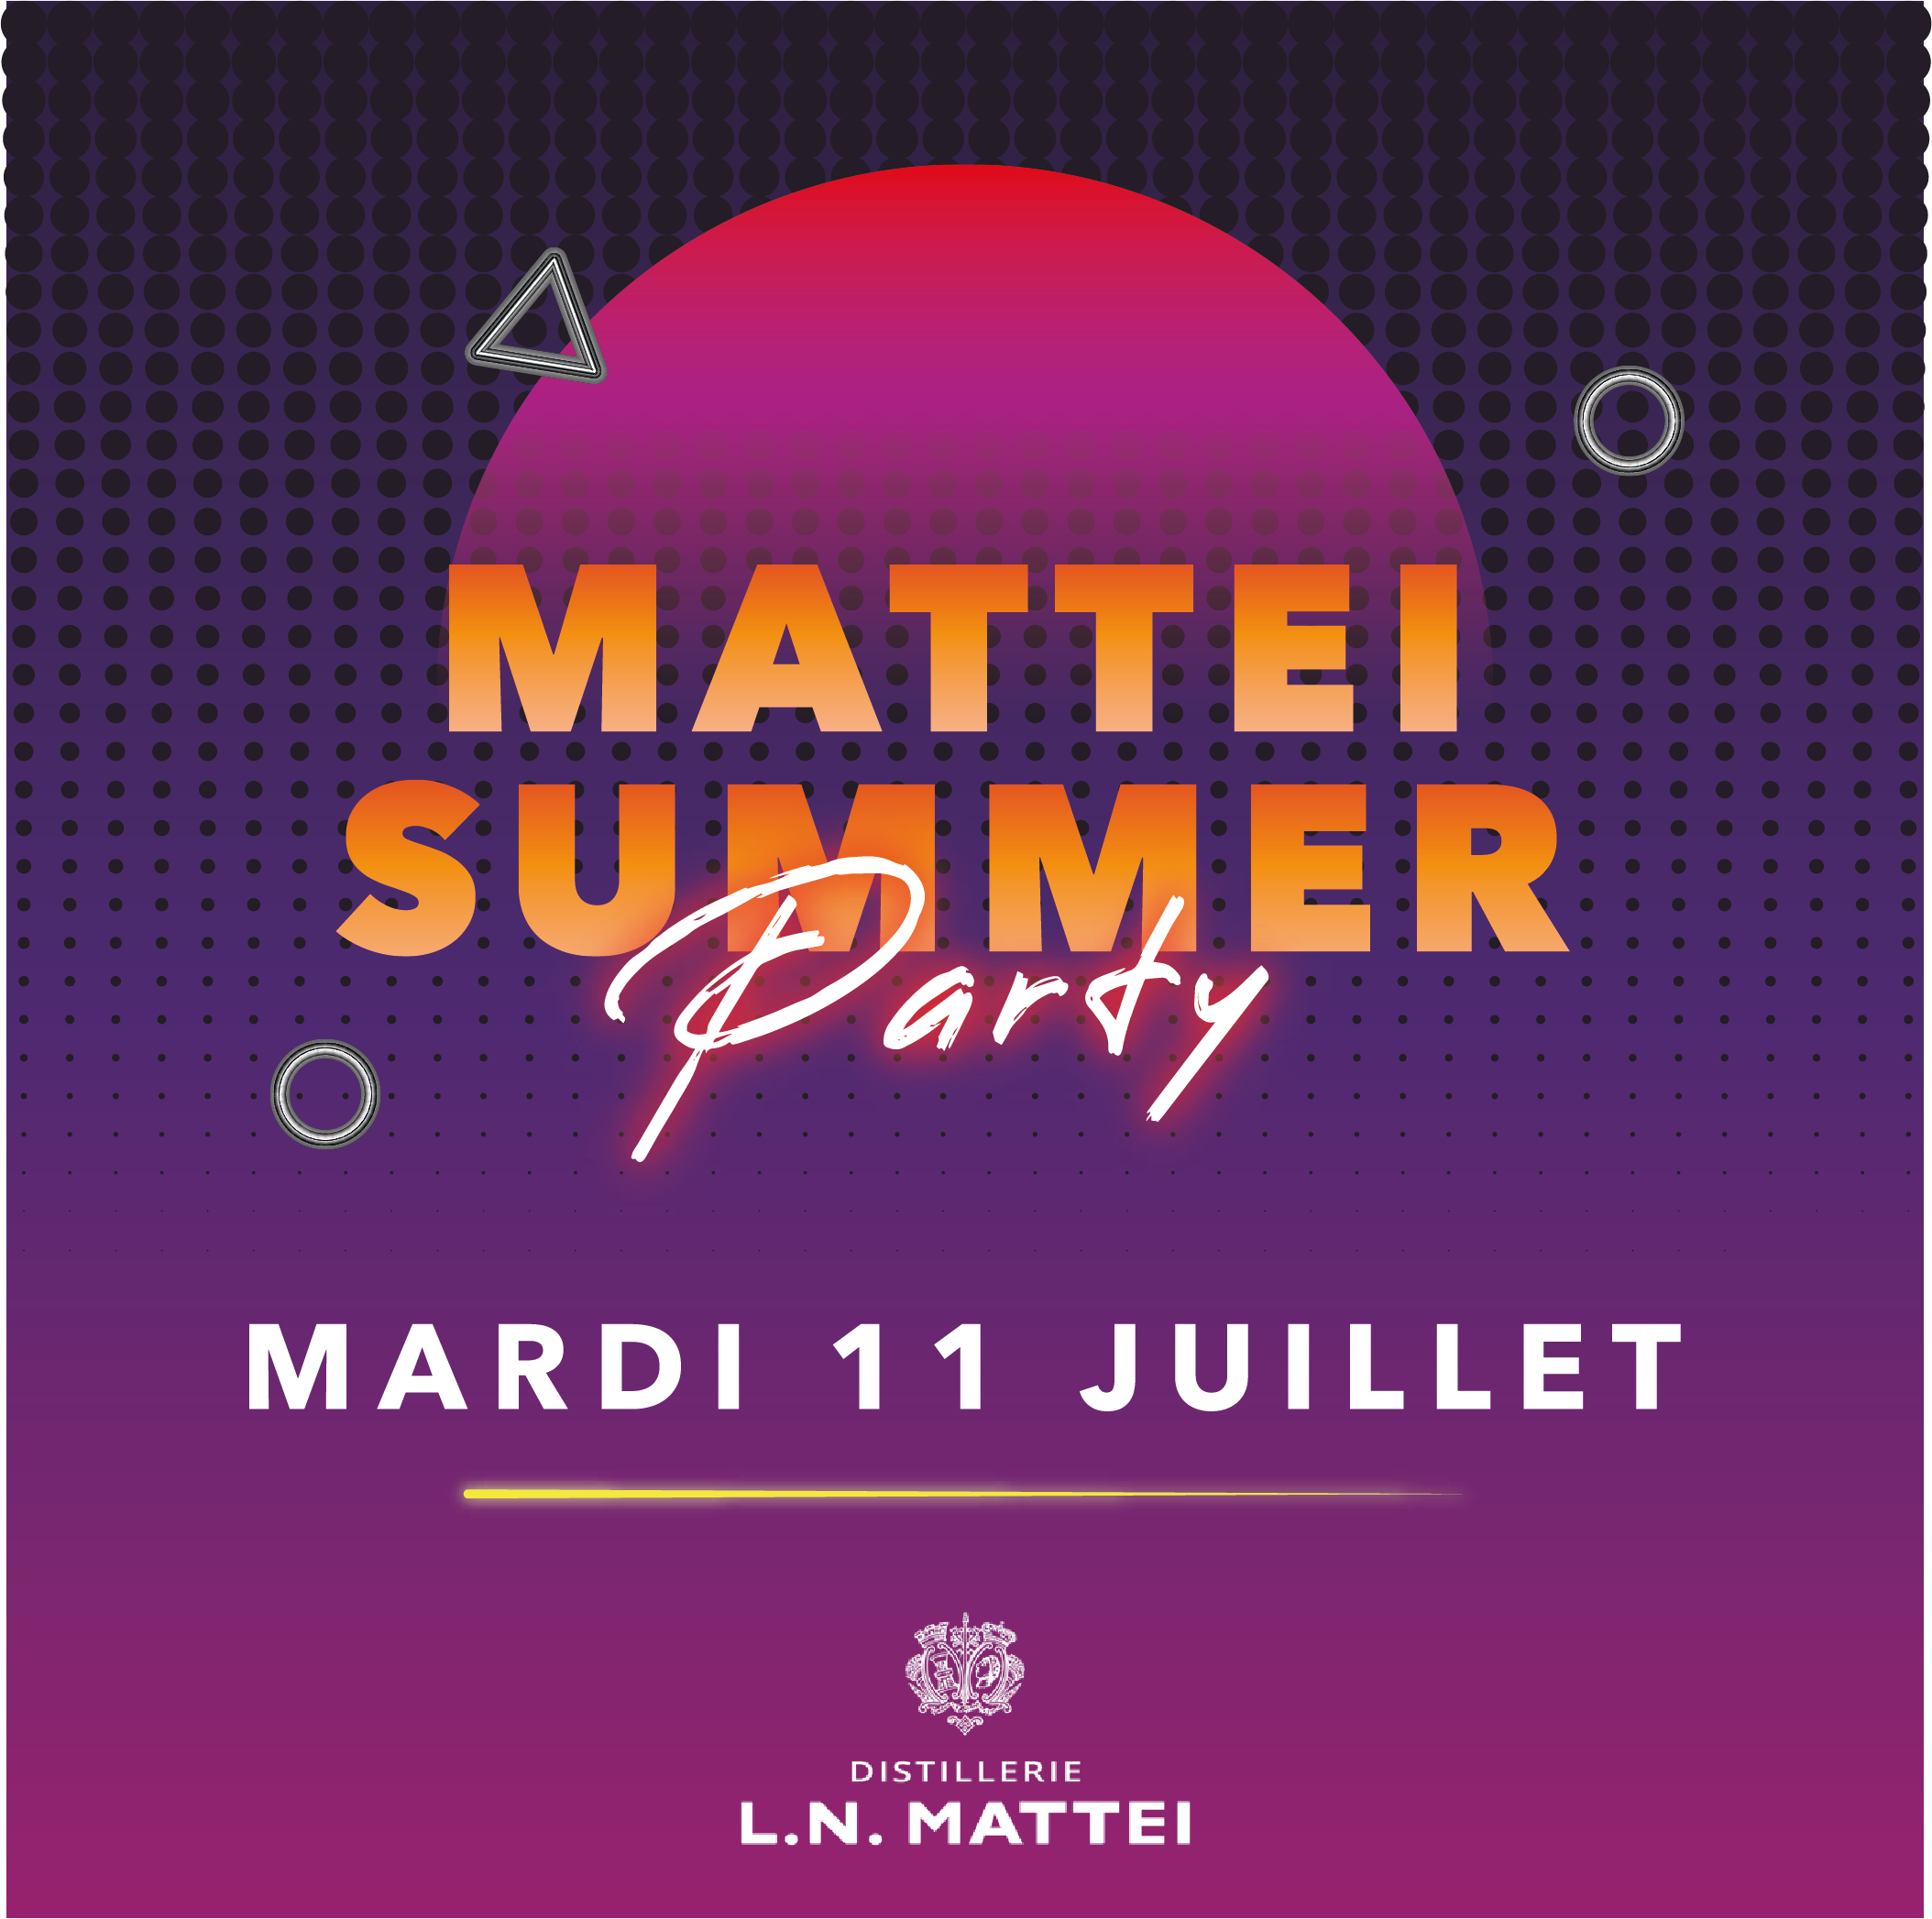 Mattei Summer Party